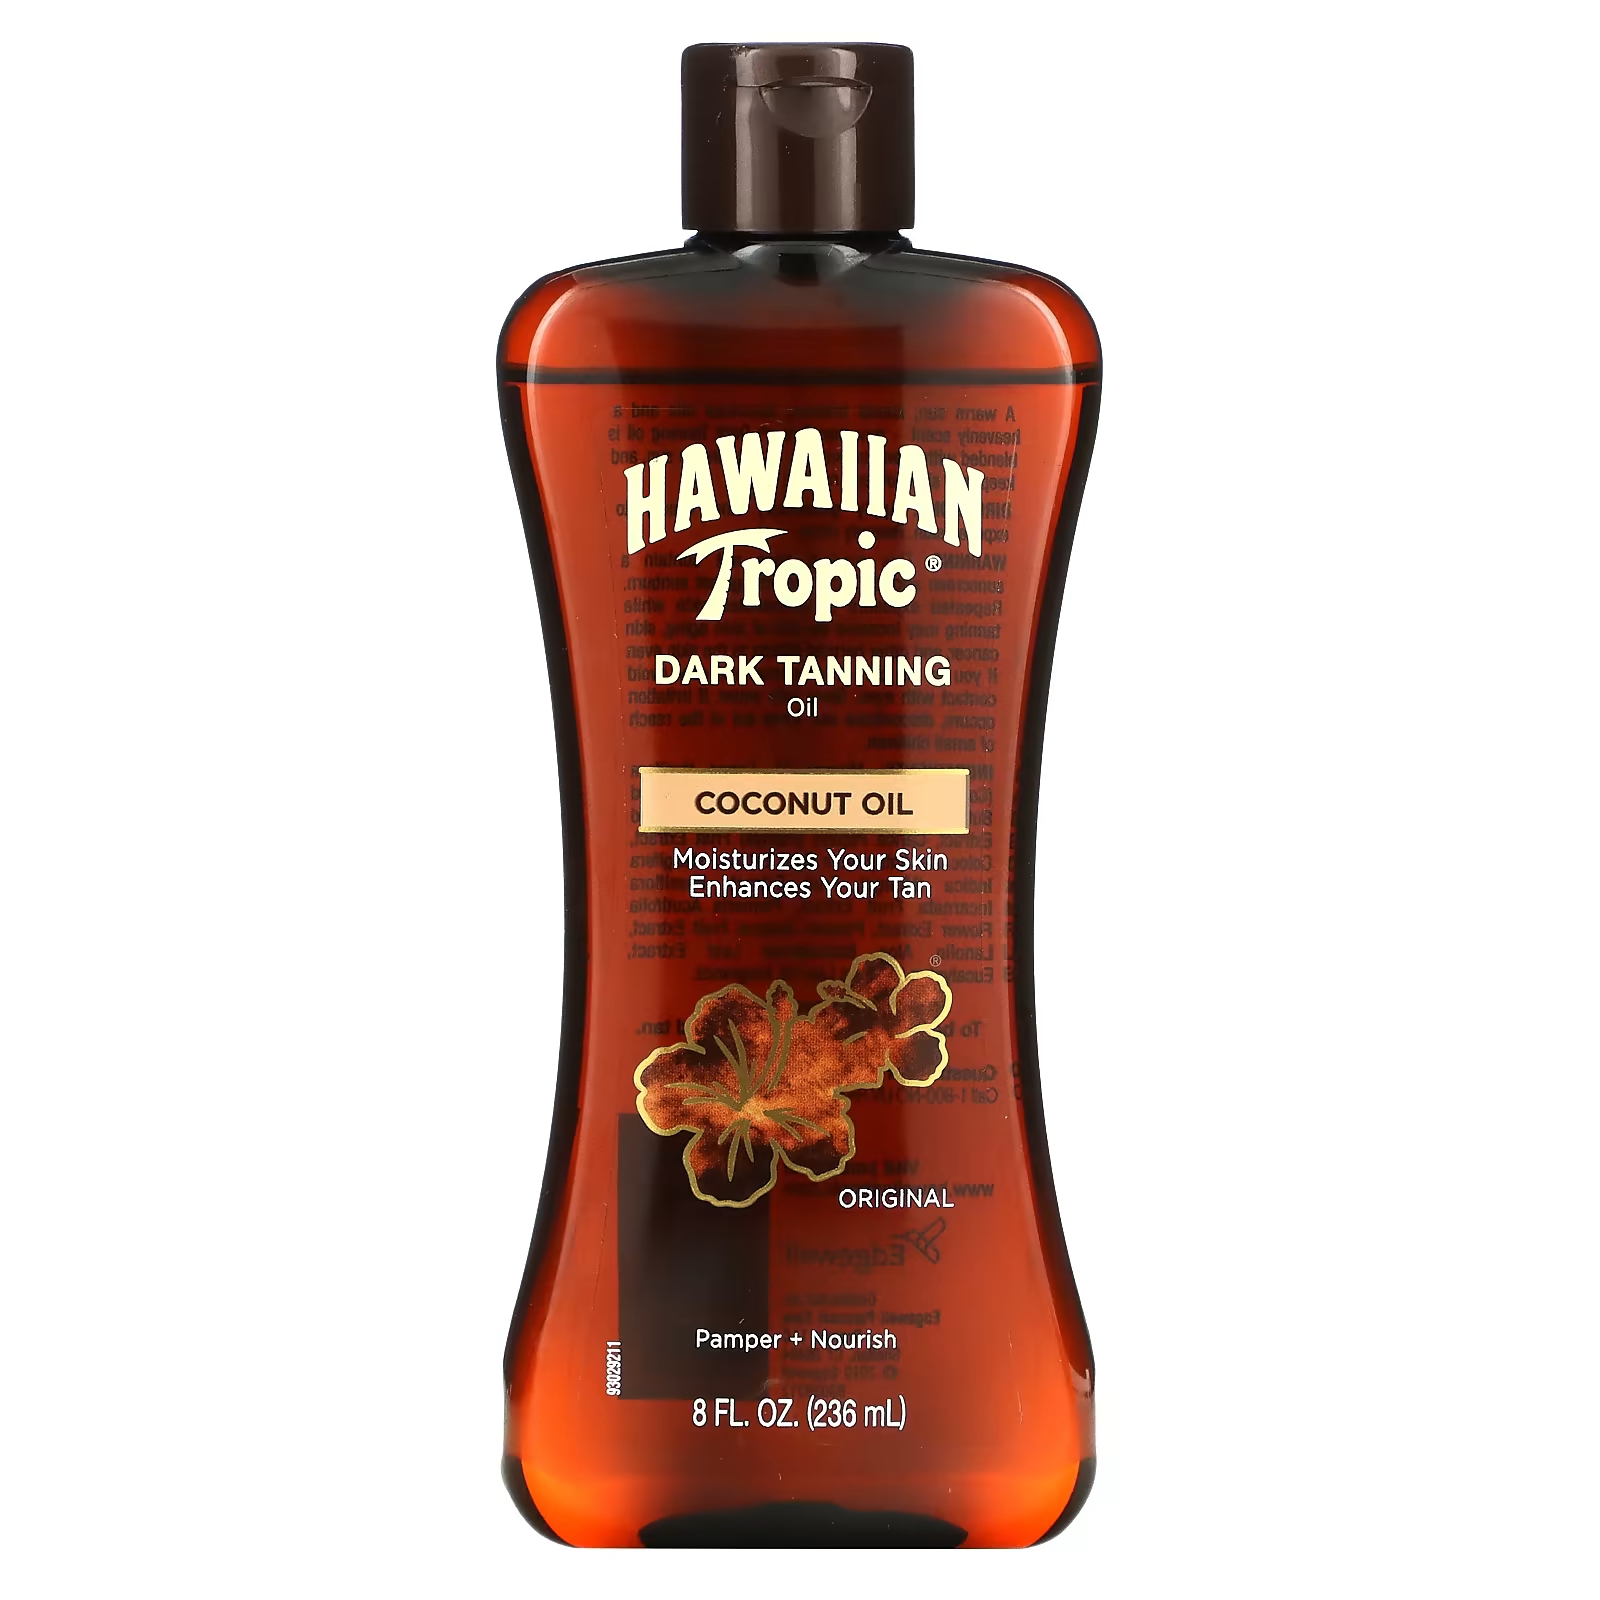 цена Кокосовое масло Hawaiian Tropic для темного загара, оригинальное, 8 жидких унций (236 мл)